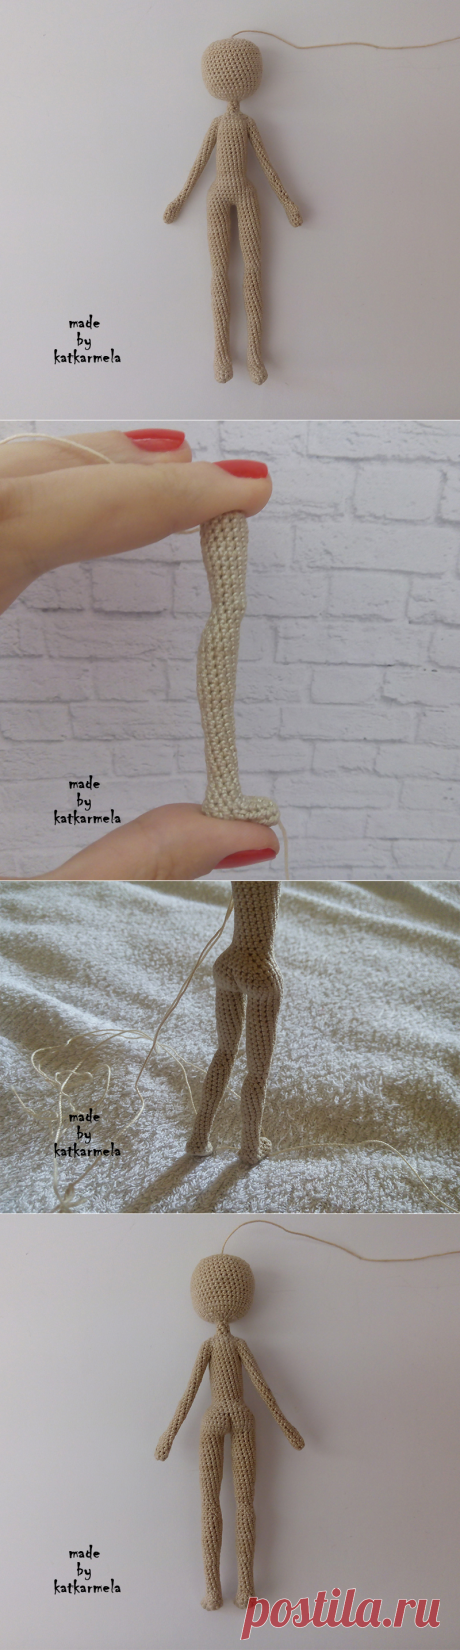 Схема с описанием вязания каркасной куклы крючком ростом 15 см - Katkarmela: игрушки амигуруми крючком